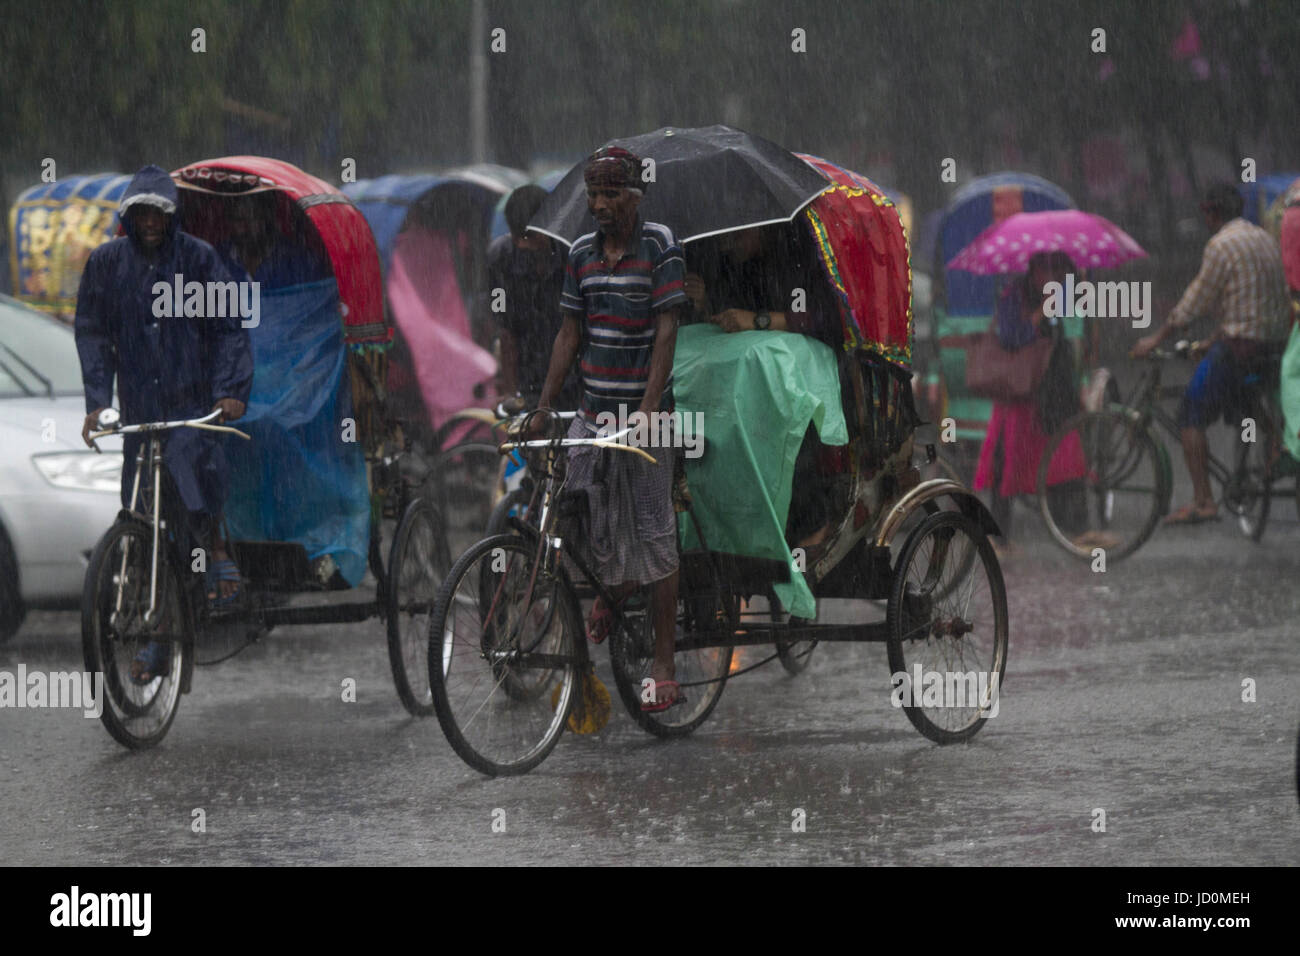 Dhaka, Bangladesh. 17 Juin, 2017. DHAKA, BANGLADESH - 17 juin : peuple bangladais vu sur rue pendant les fortes pluies dans la région de Dhaka, Bangladesh, le 17 juin 2017.Le nombre de morts s'élève à 156 dans plusieurs districts des collines y compris, Rangamati Banderban, et de Chittagong après le glissement de terrain après de fortes pluies diluviennes dans ces domaines. La route de la communication a été cassé et les sauveteurs ne pourrait pas fonctionner avec leur pleine vitesse et aucune réparation n'a été atteint dans les régions touchées. Zakir Hossain Chowdhury Crédit : Fil/ZUMA/Alamy Live News Banque D'Images